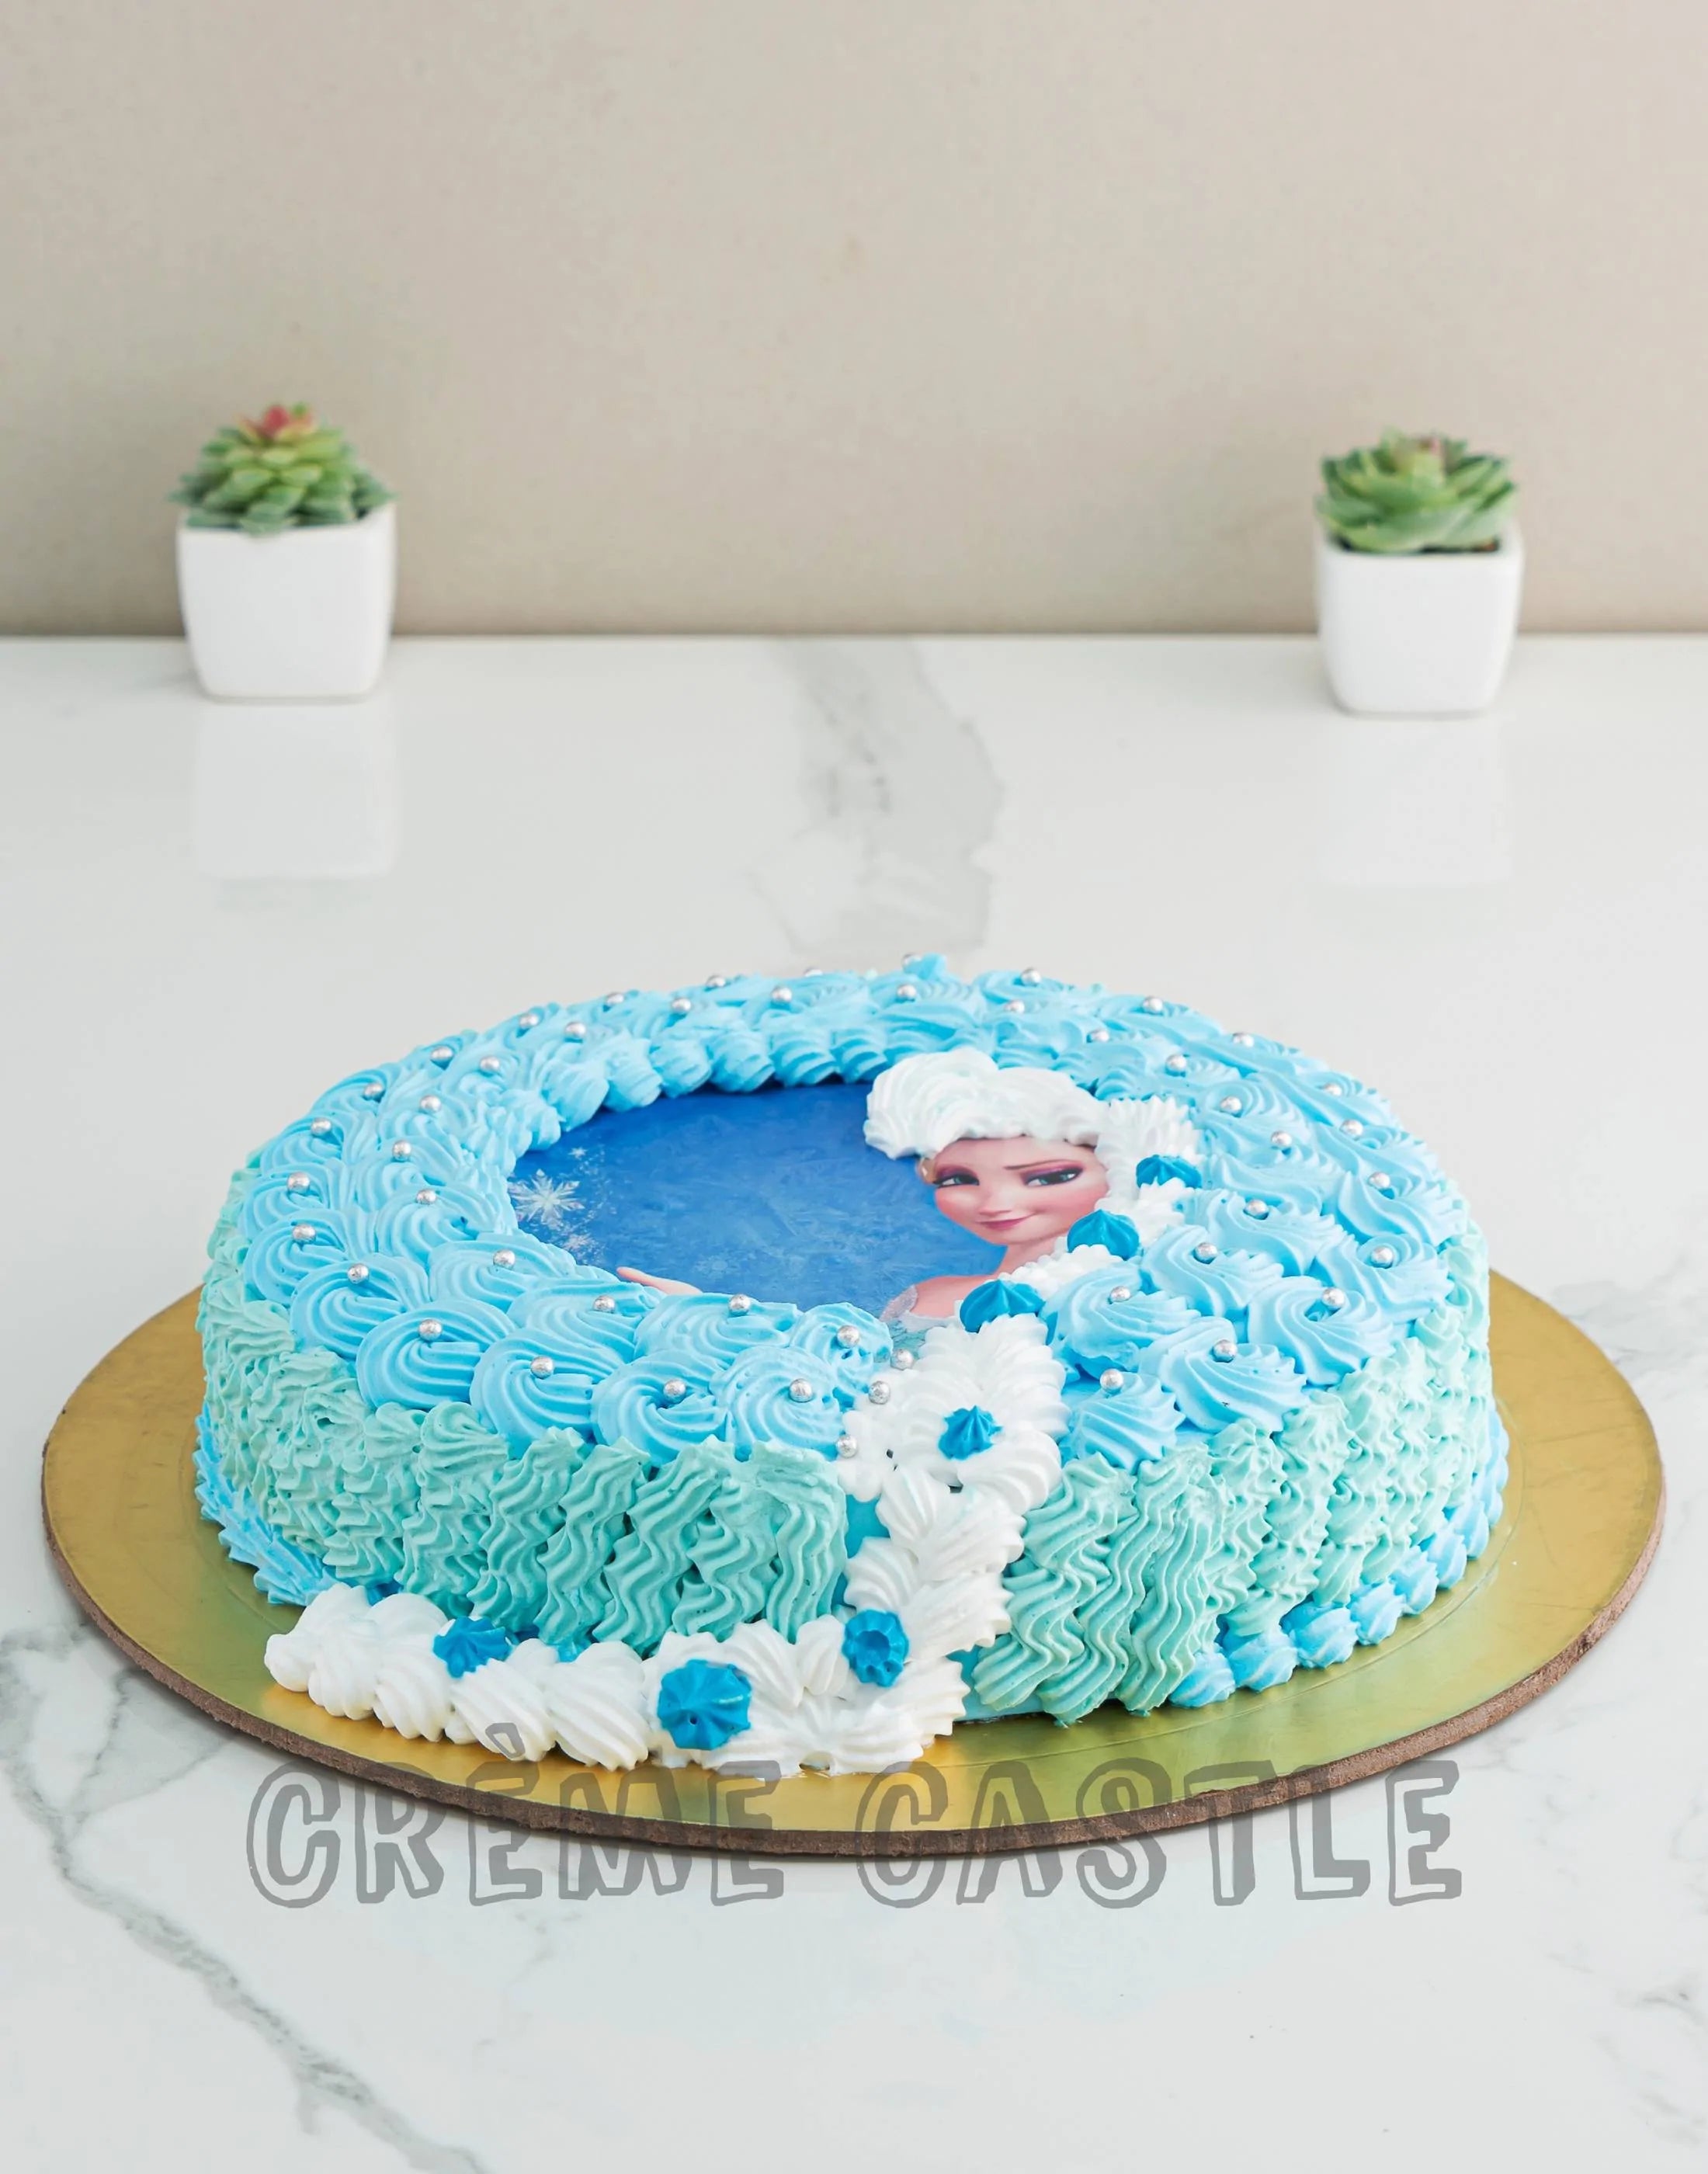 5 Easy Frozen Birthday Cake Ideas - Cake 2 The Rescue